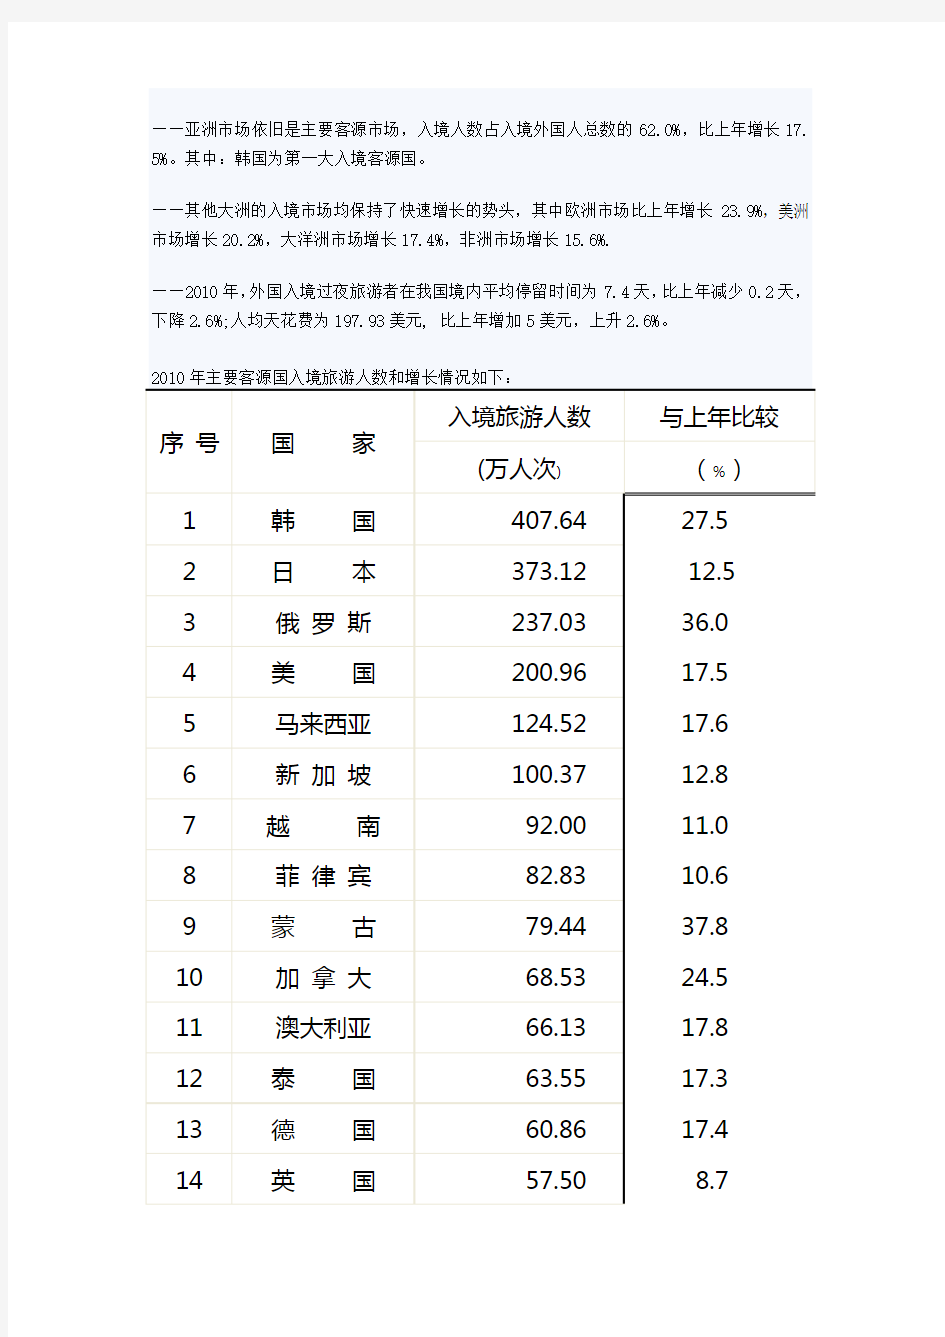 2010年中国旅游业统计公报